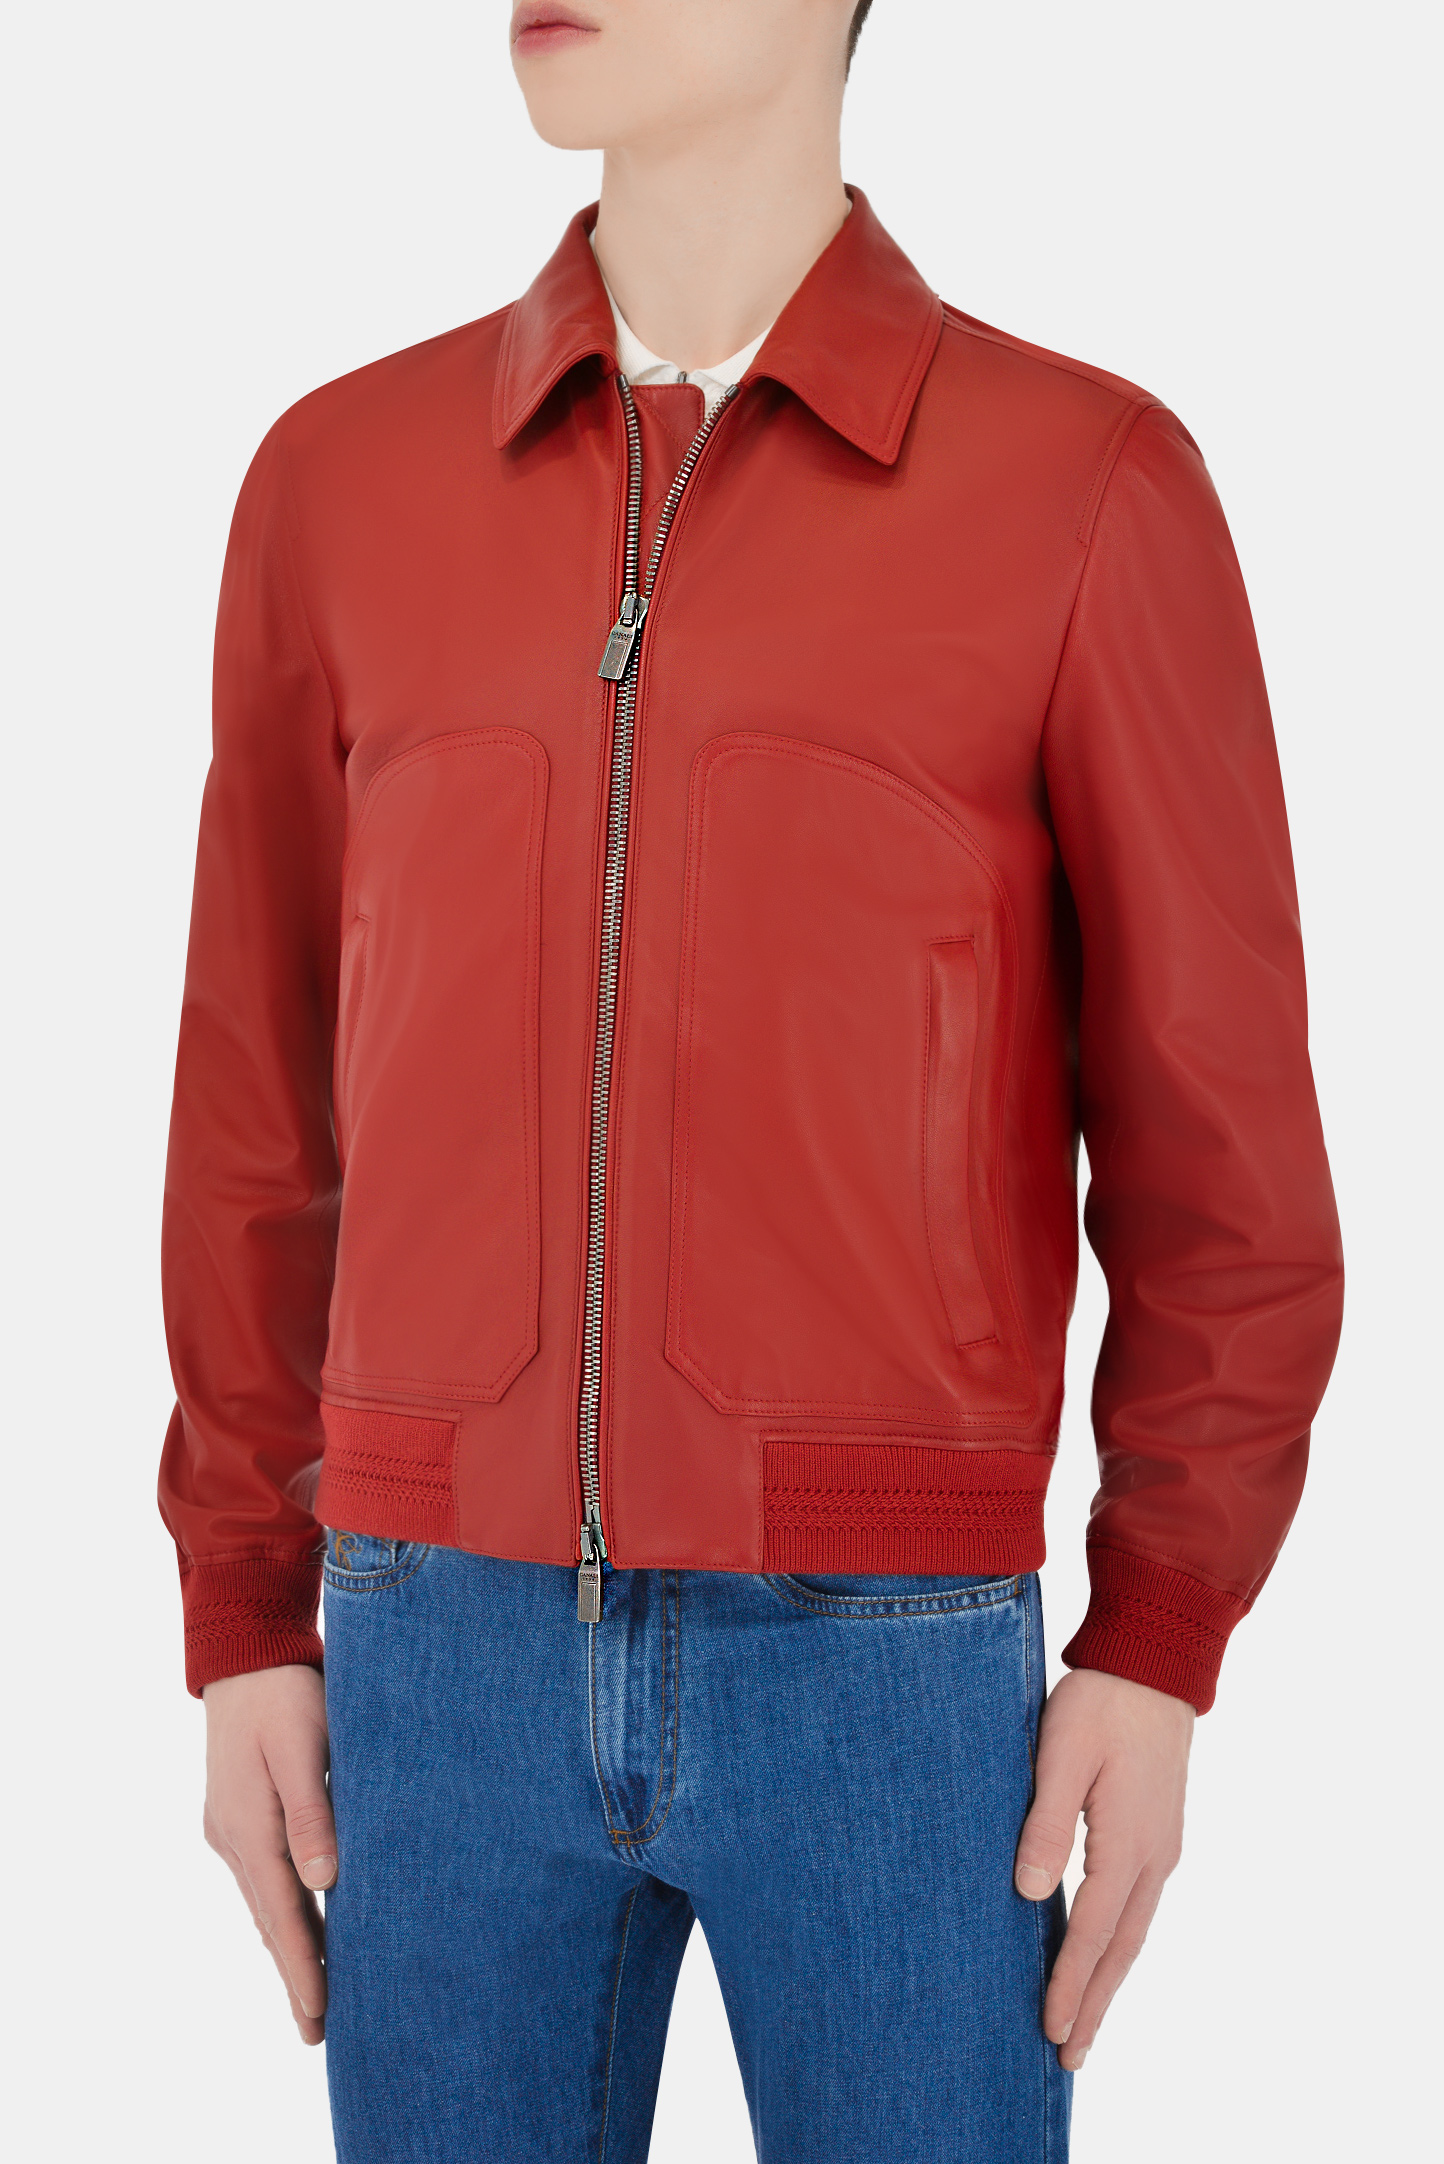 Куртка CANALI LE00144/901, цвет: Красный, Мужской